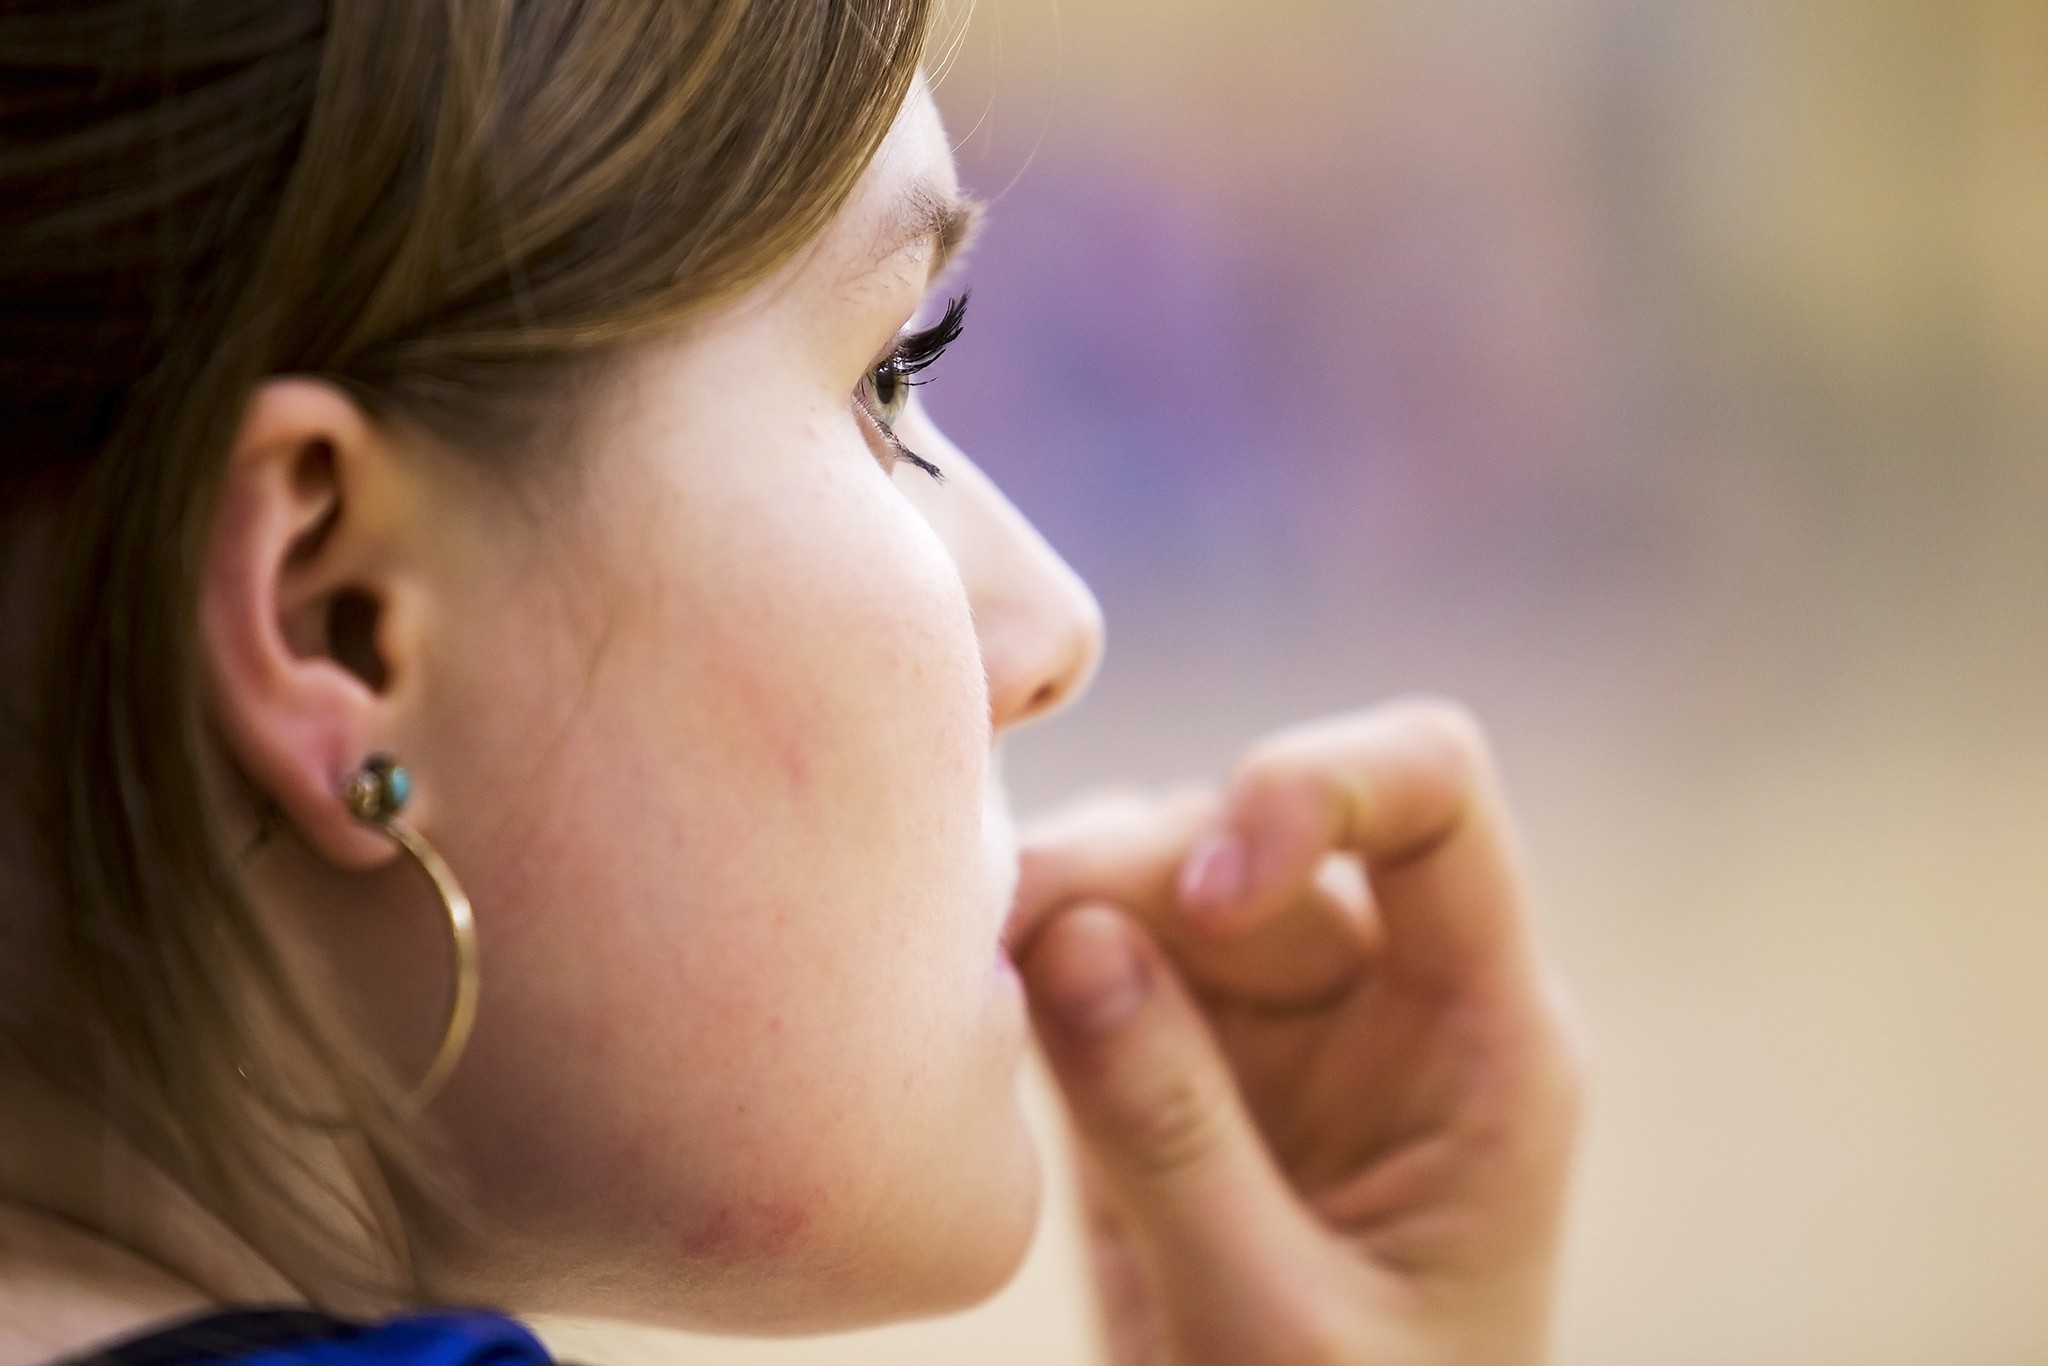 Roer unhas pode diminuir o risco de você ter alergias (Foto: Flickr/ Steven Vacher/ Creative Commons)